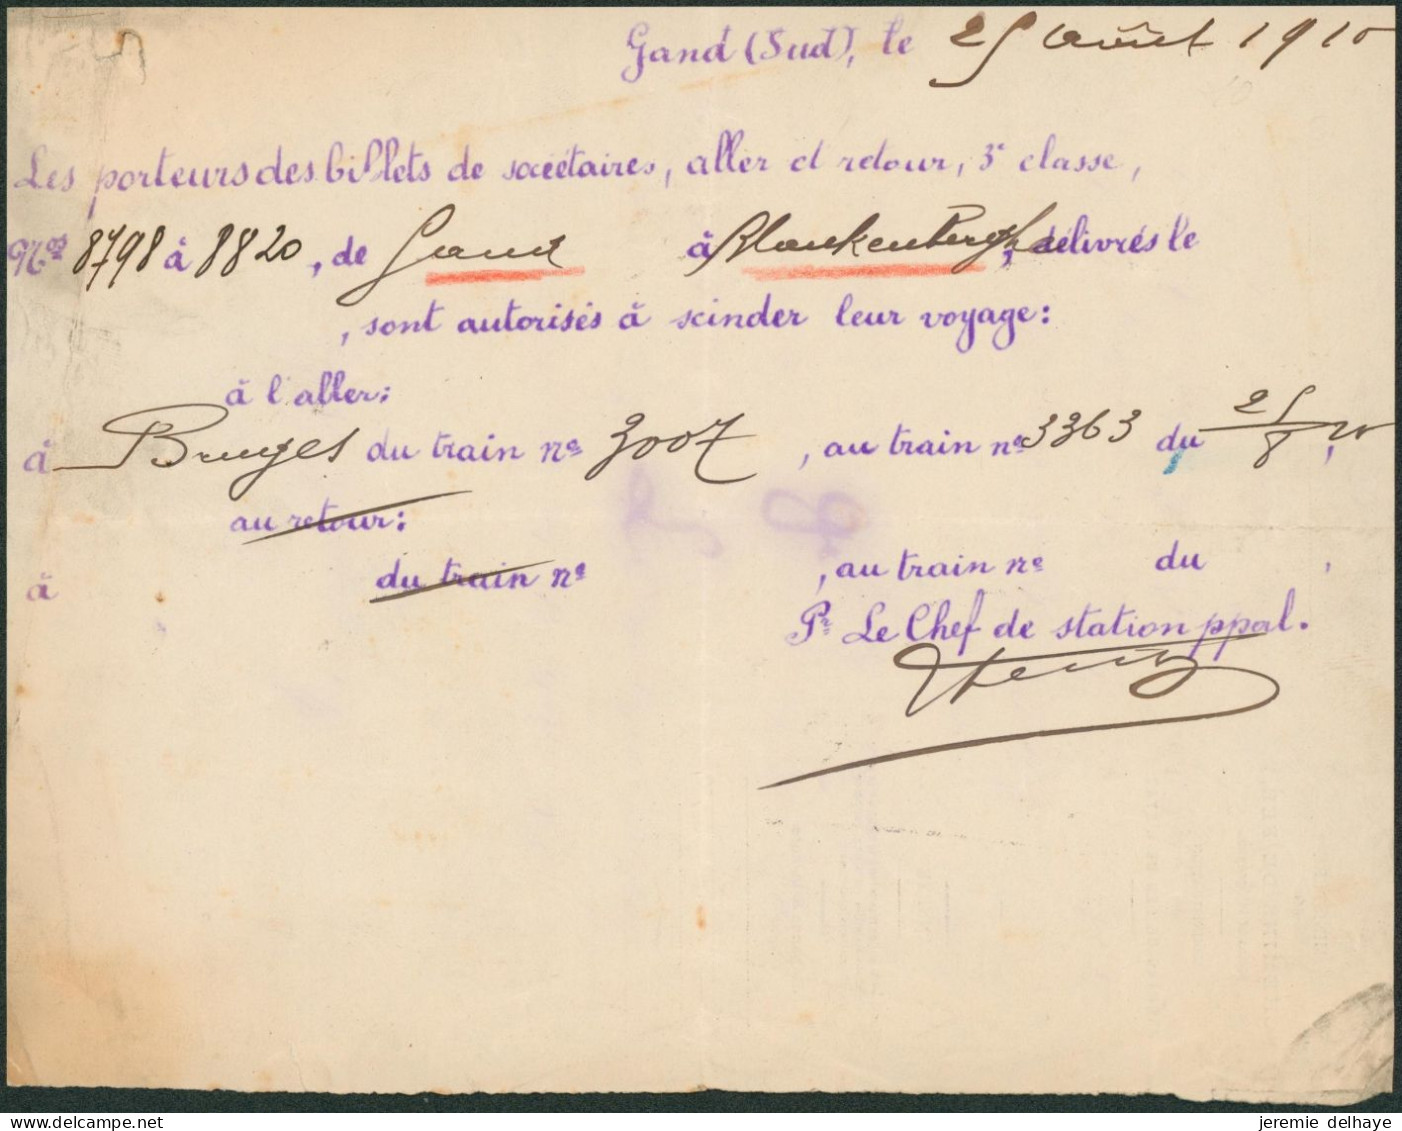 Belgique - Note Manuscrite (Billets, 1910) Aller/ Retour 3e Classe De Gand à Blanckenberghe Sont Autorisés à Scinder Leu - Europe